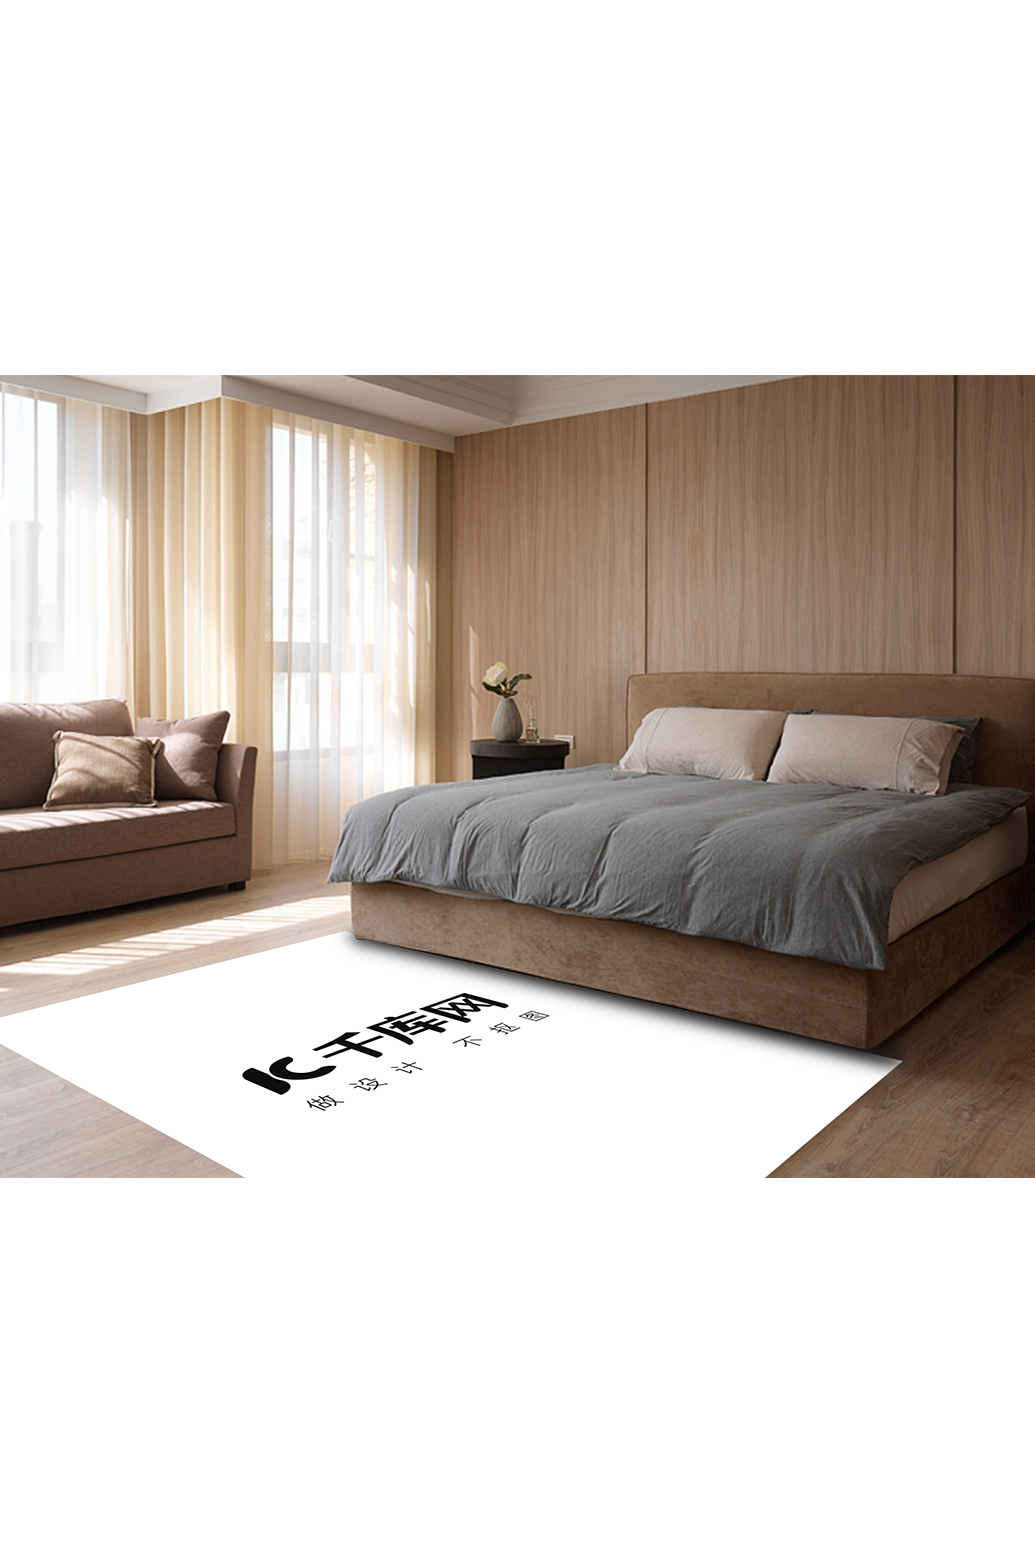 卧室内装饰模板地毯展示白色创意样机图片